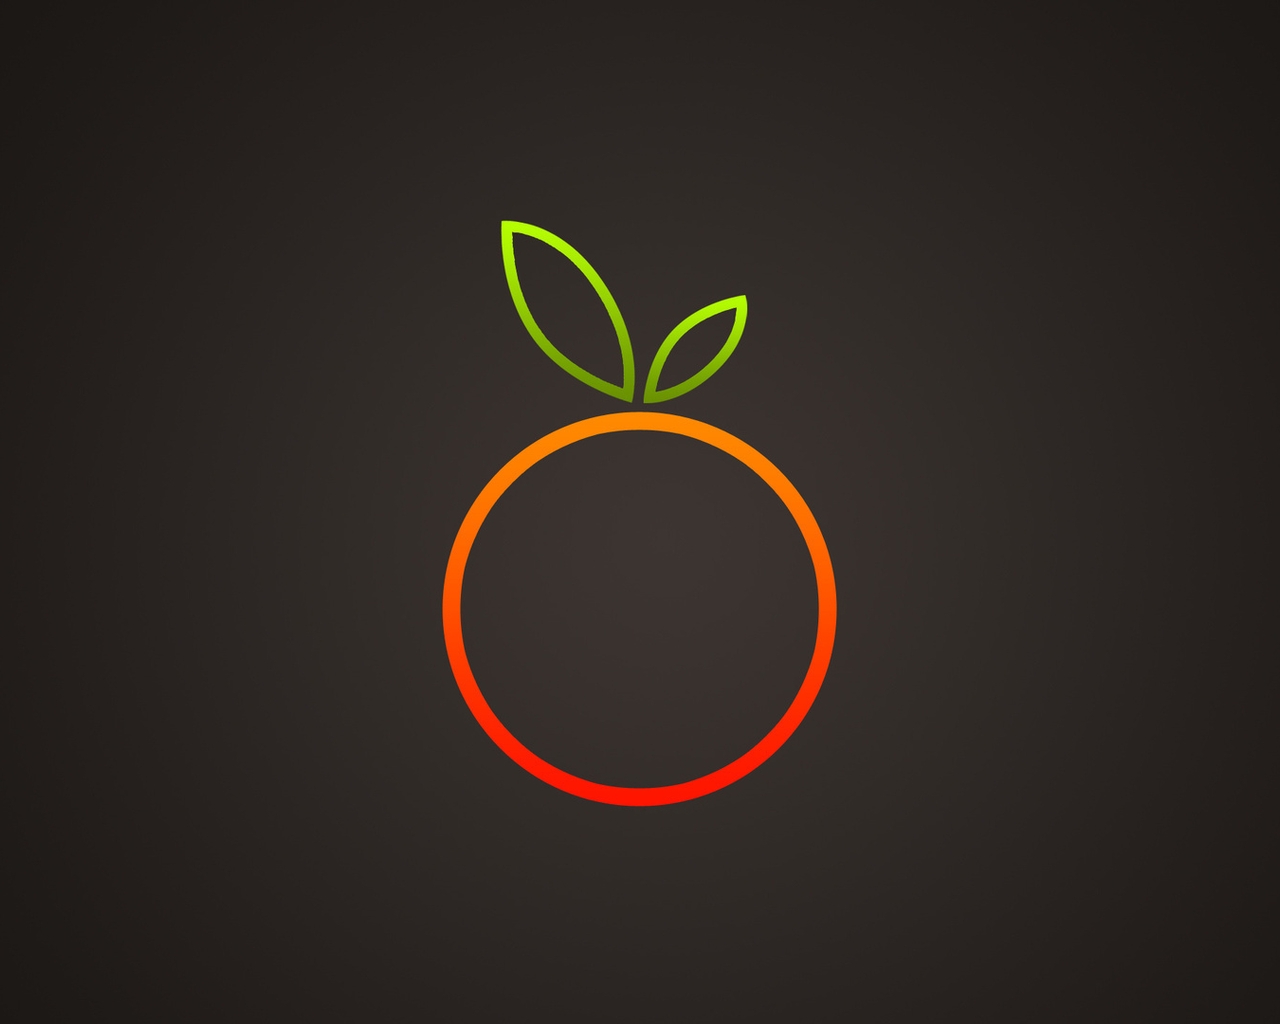 Картинка: Апельсин, круг, оранжевый, контур, листья, тёмный фон